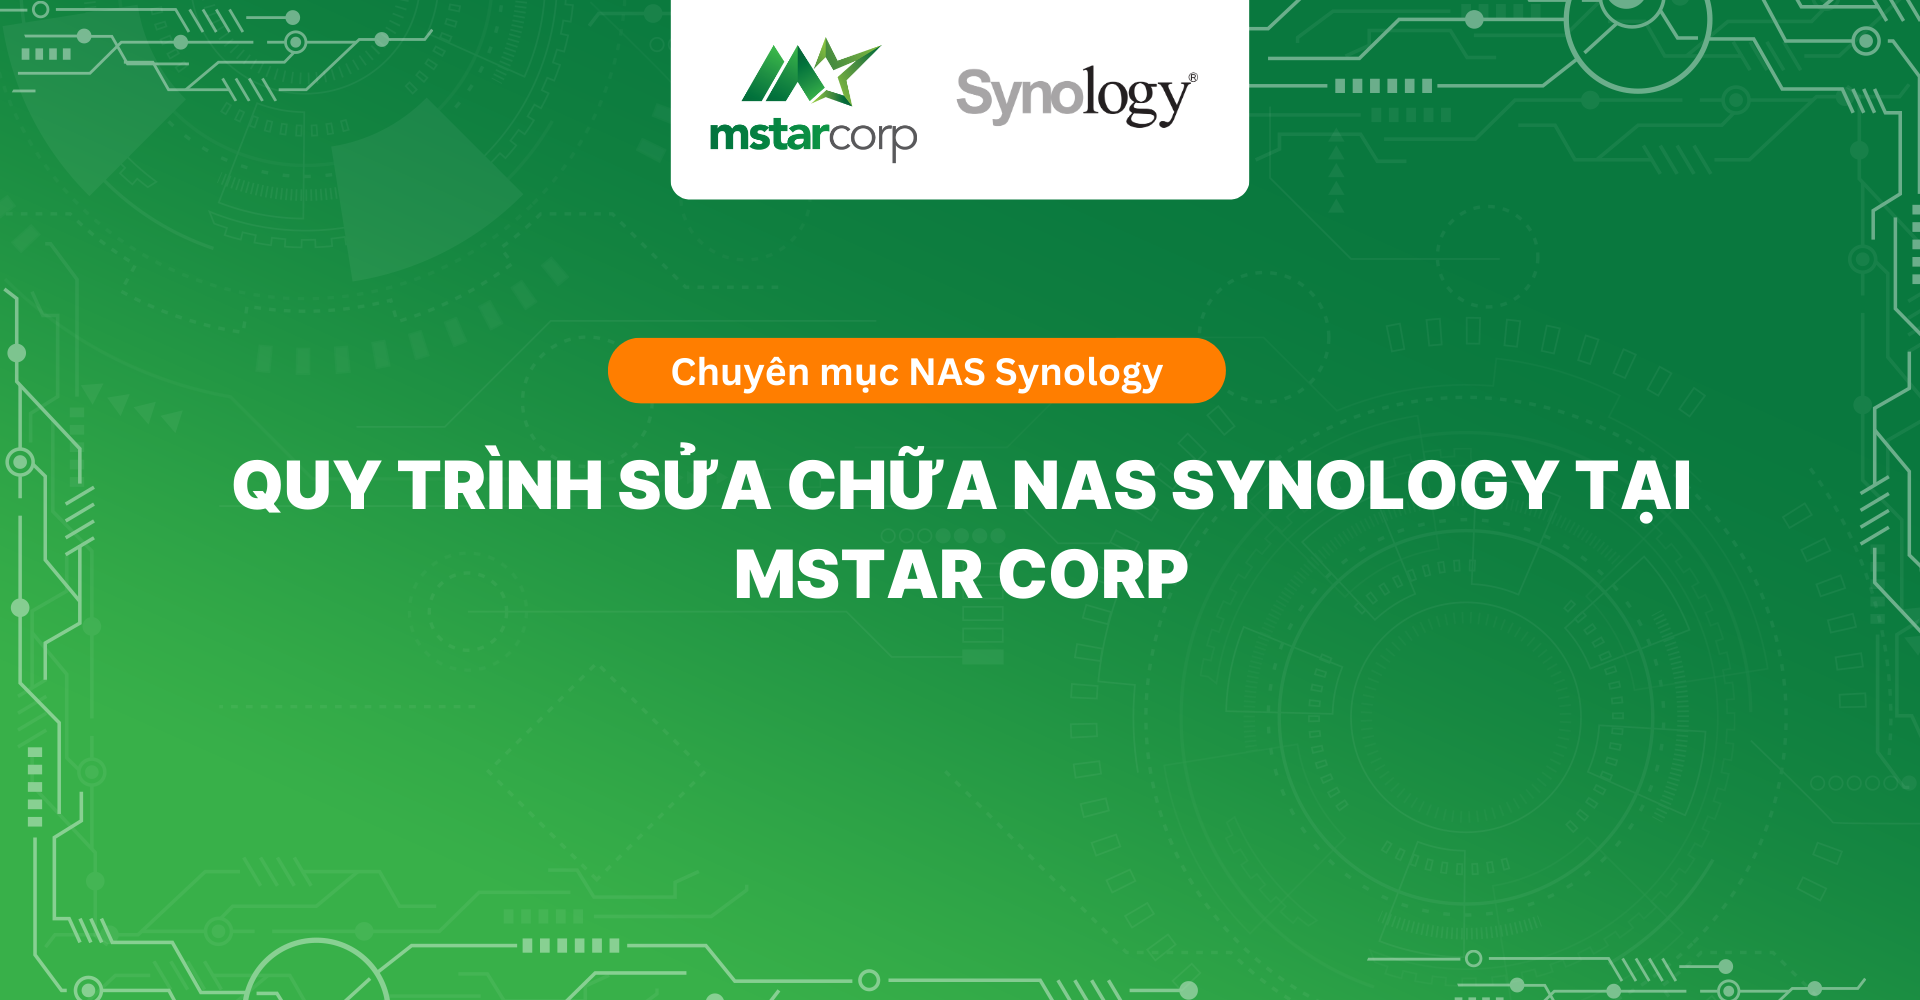 Quy trình sửa chữa NAS Synology tại Mstar Corp